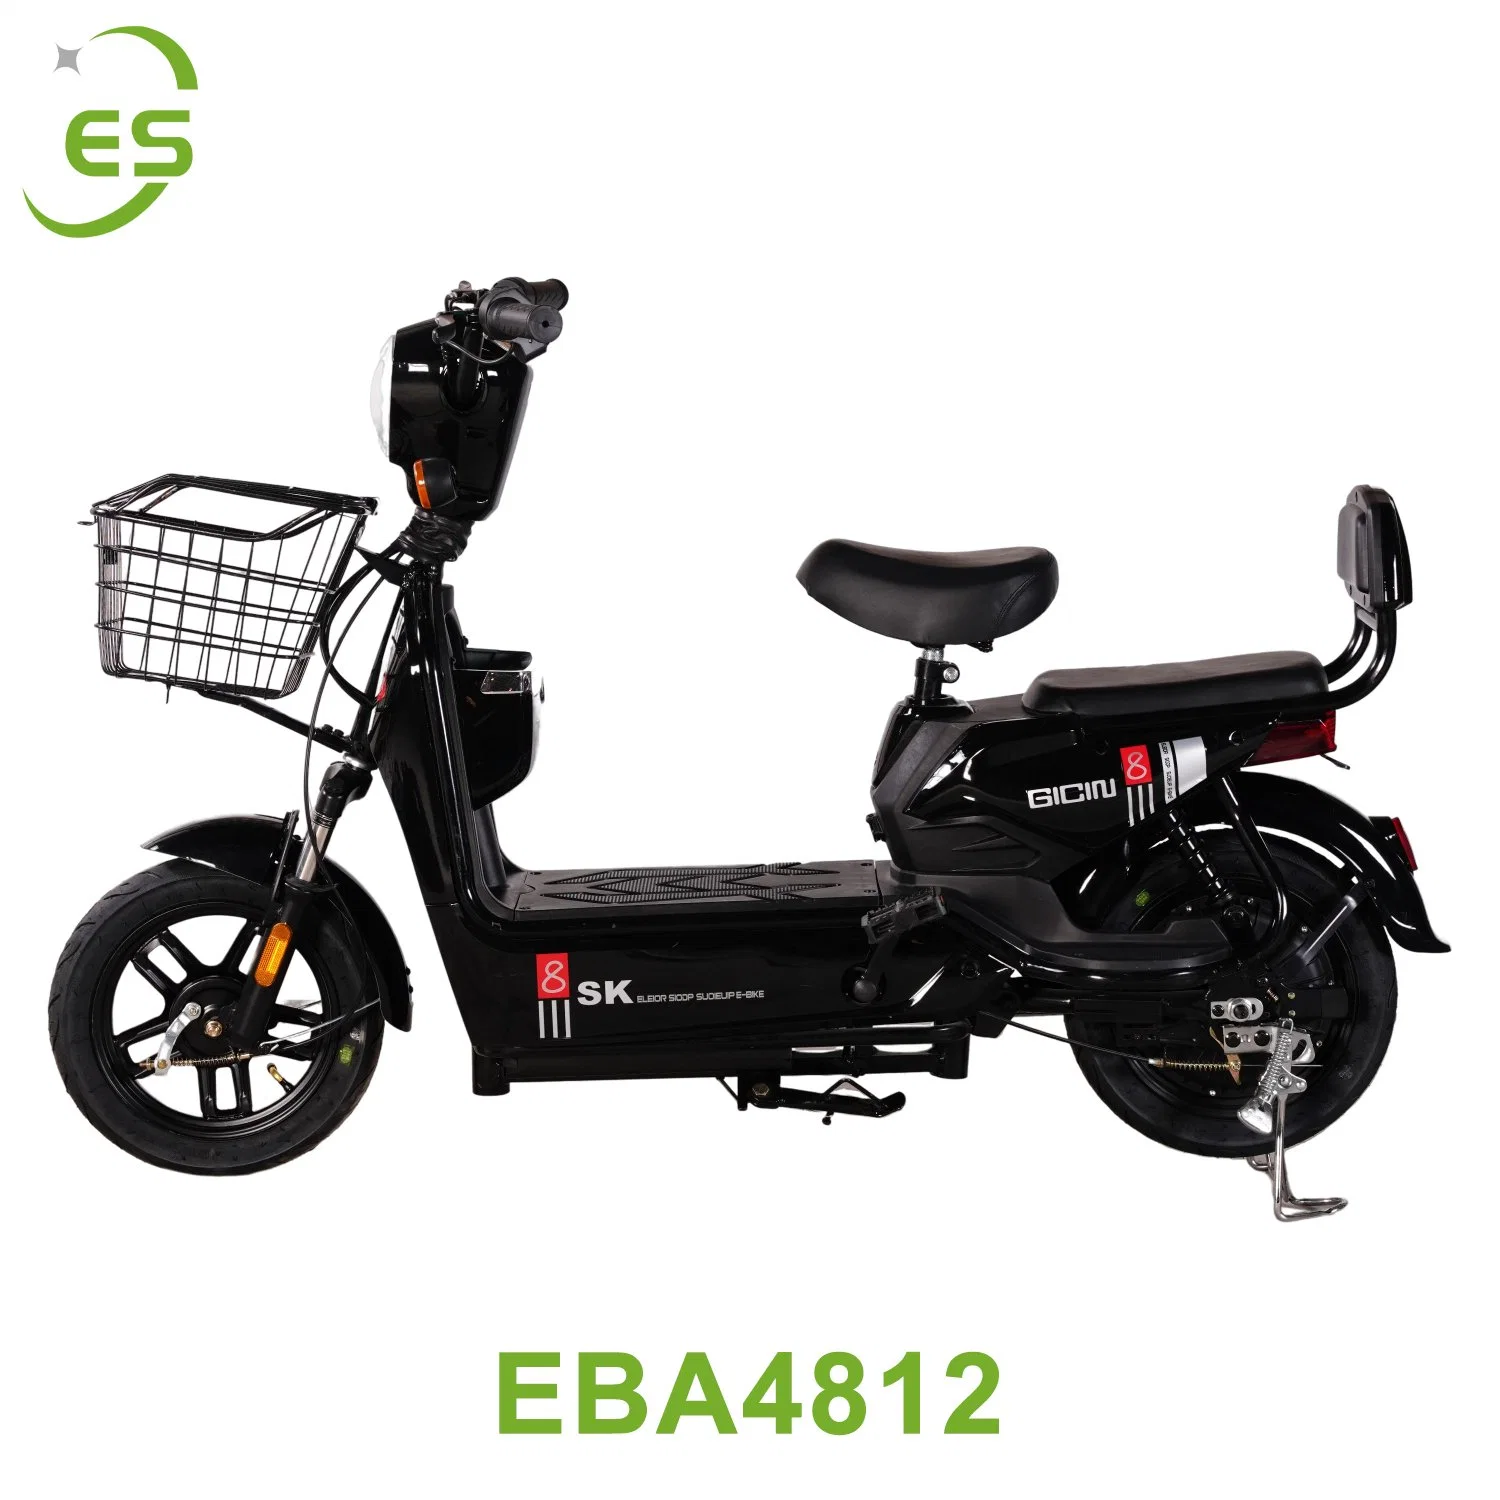 Original Factory produit des bicyclettes électriques peuvent être personnalisées pour produire Vente de vélos électriques neufs